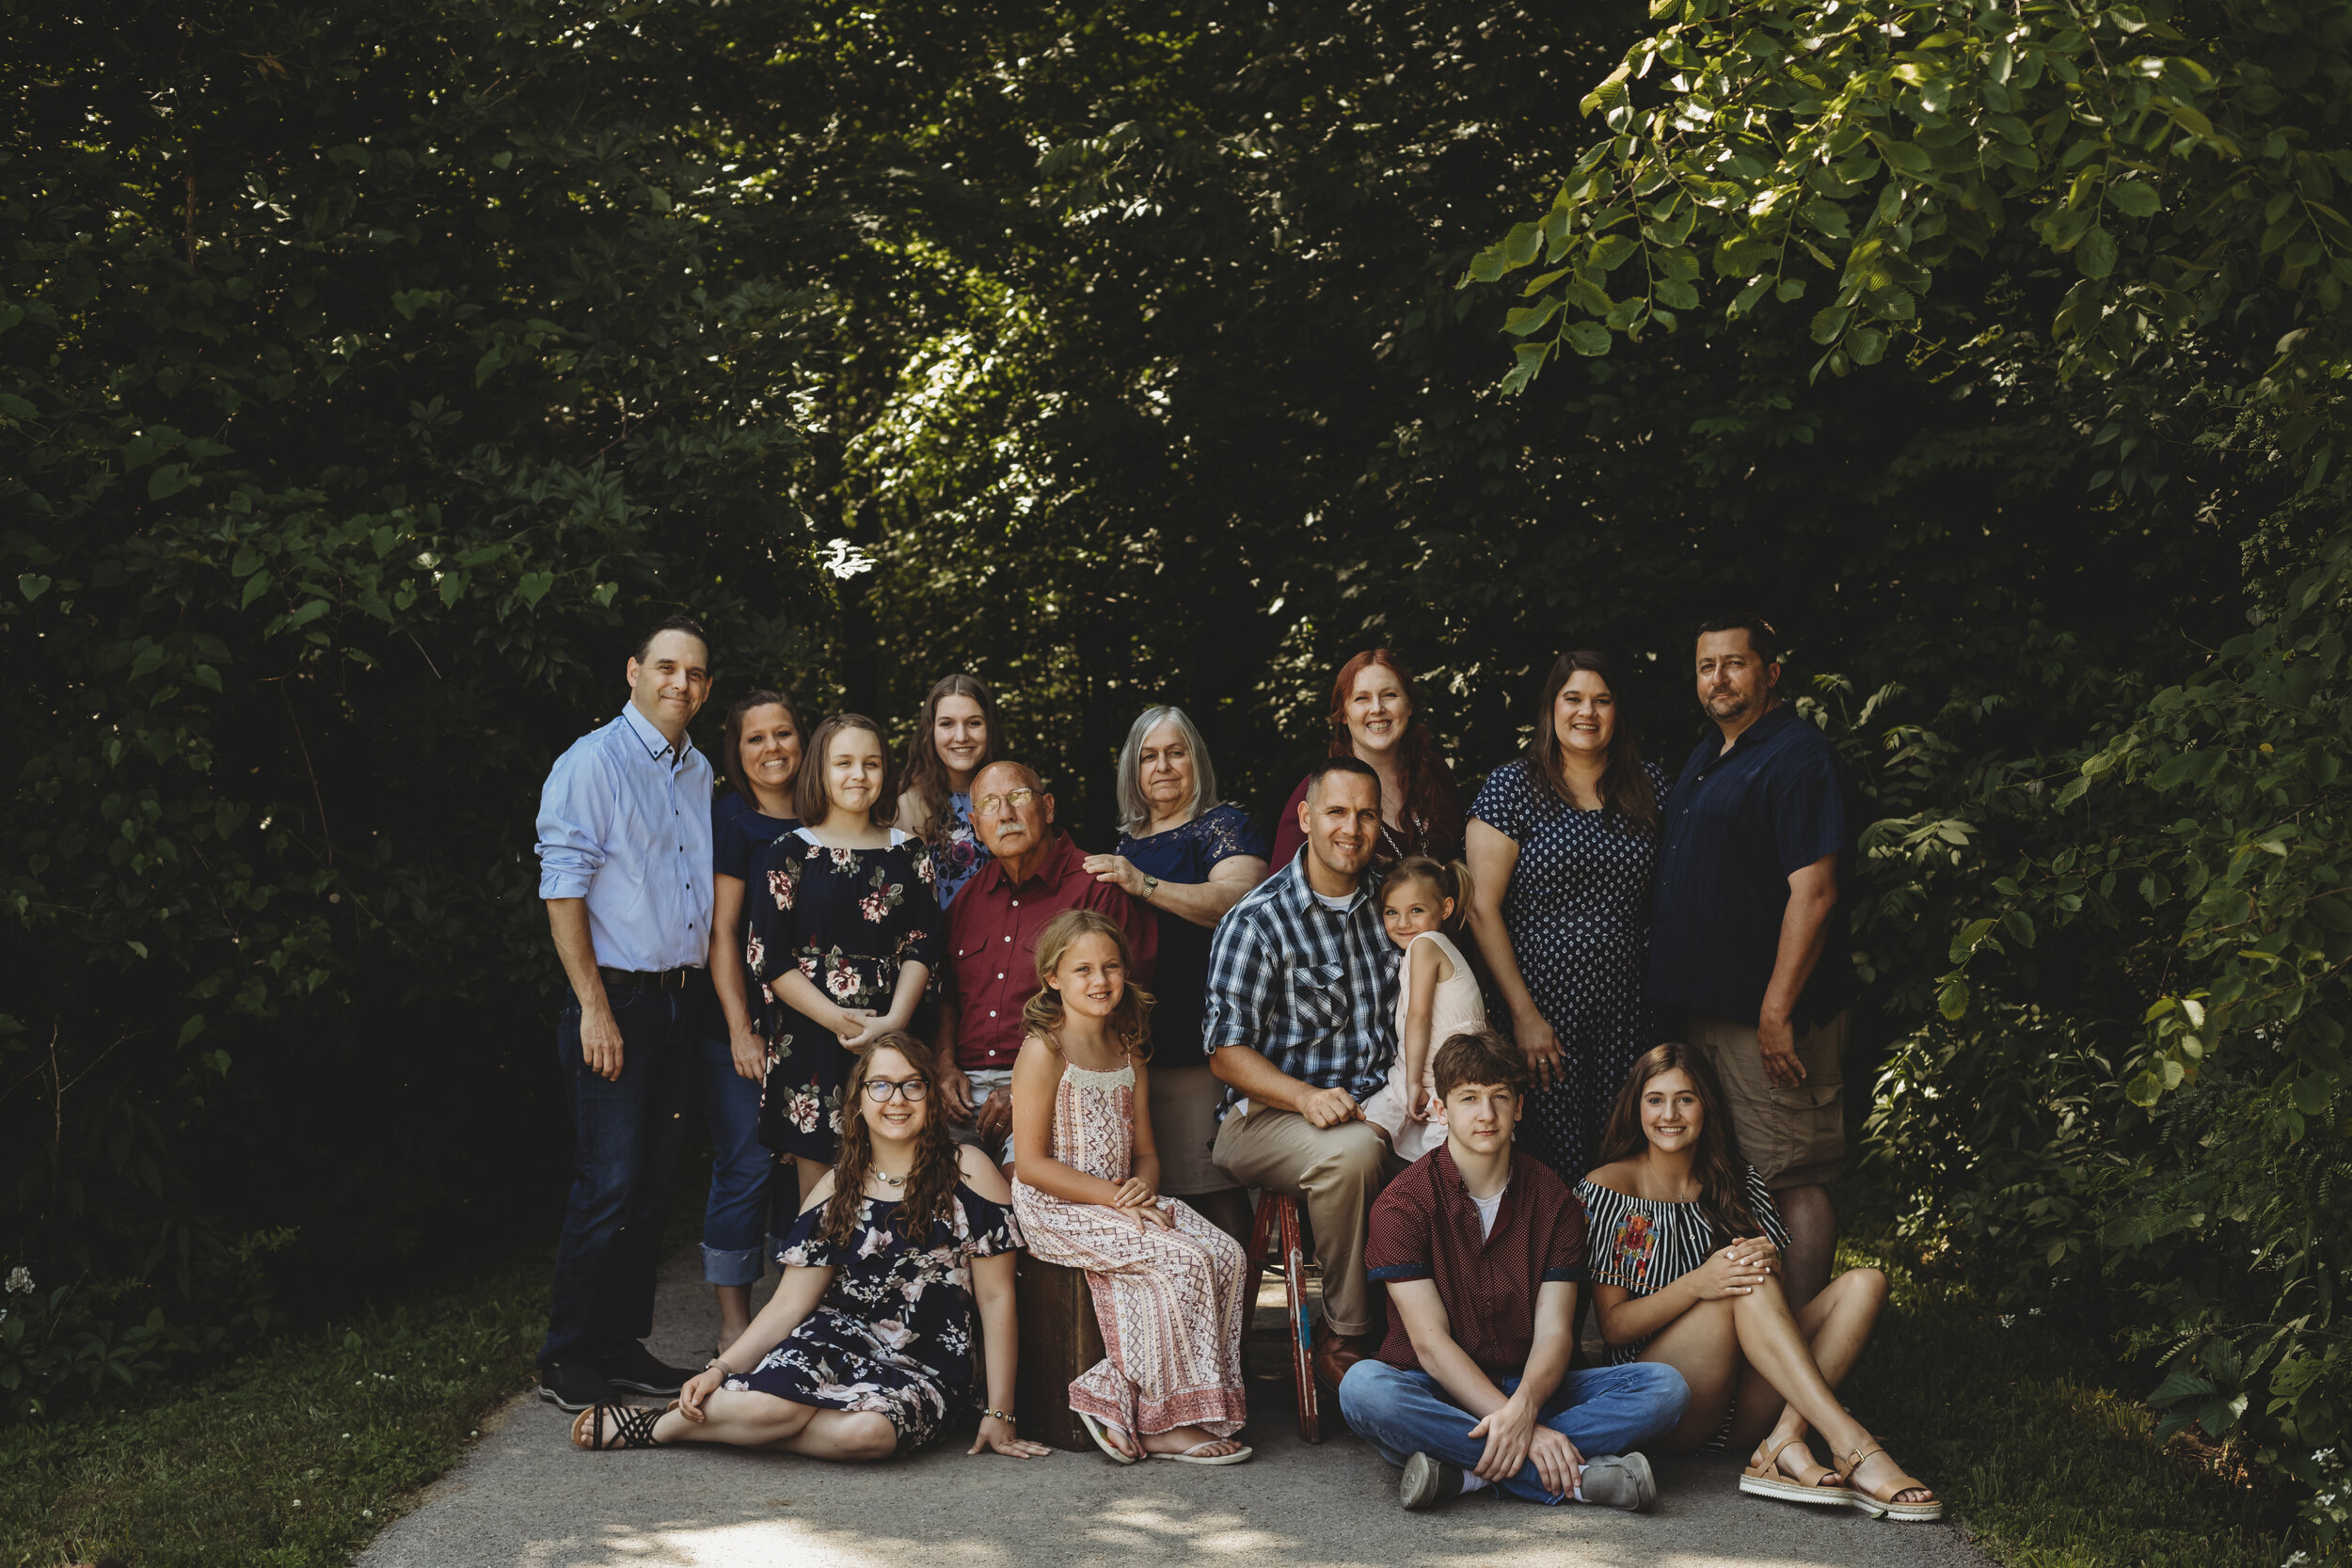 extended family photos, columbus ohio